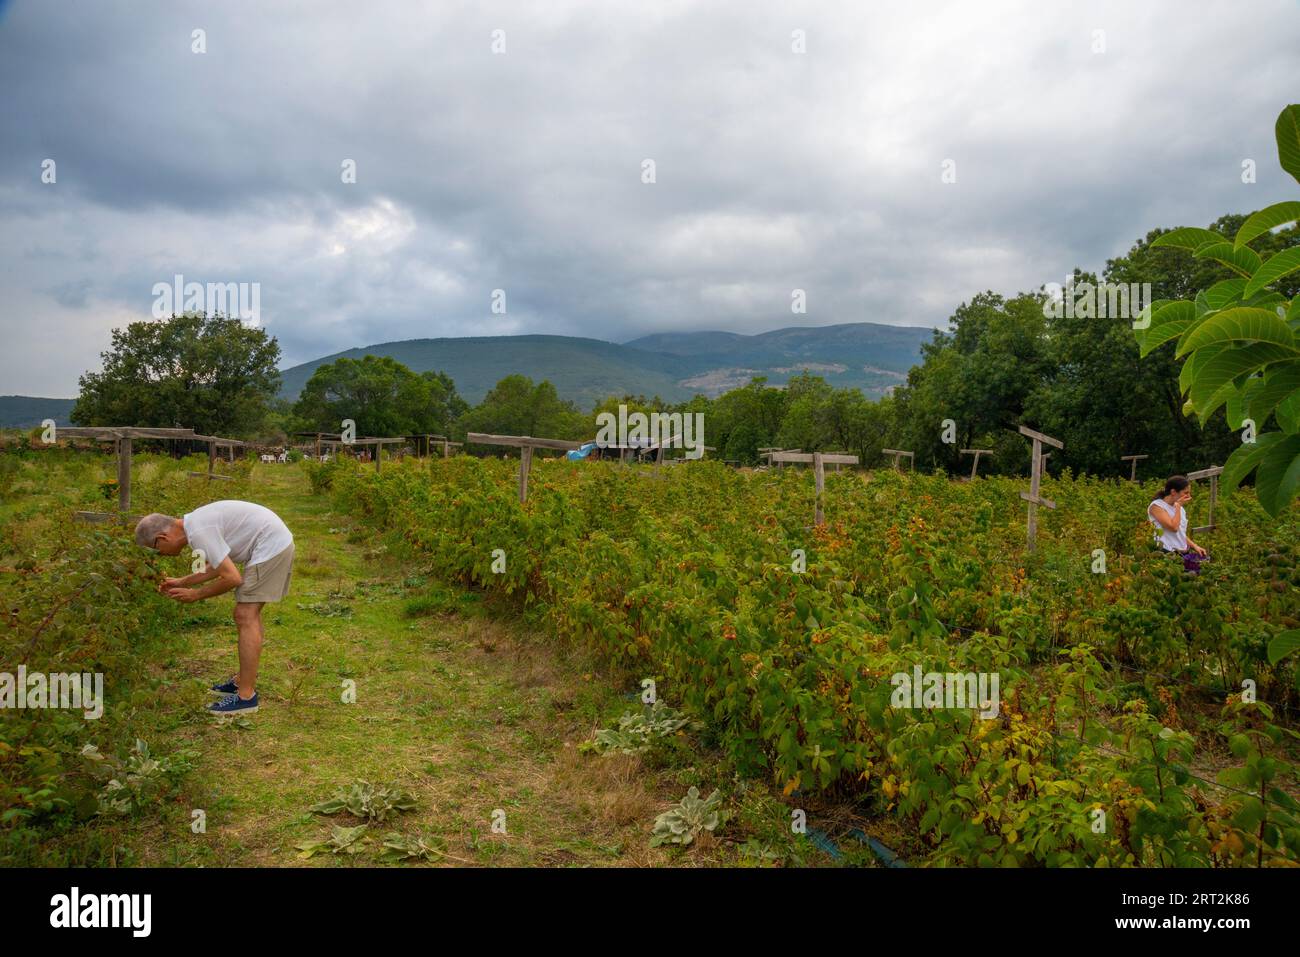 Les gens récoltant des framboises dans une plantation. Lozoya, province de Madrid, Espagne. Banque D'Images